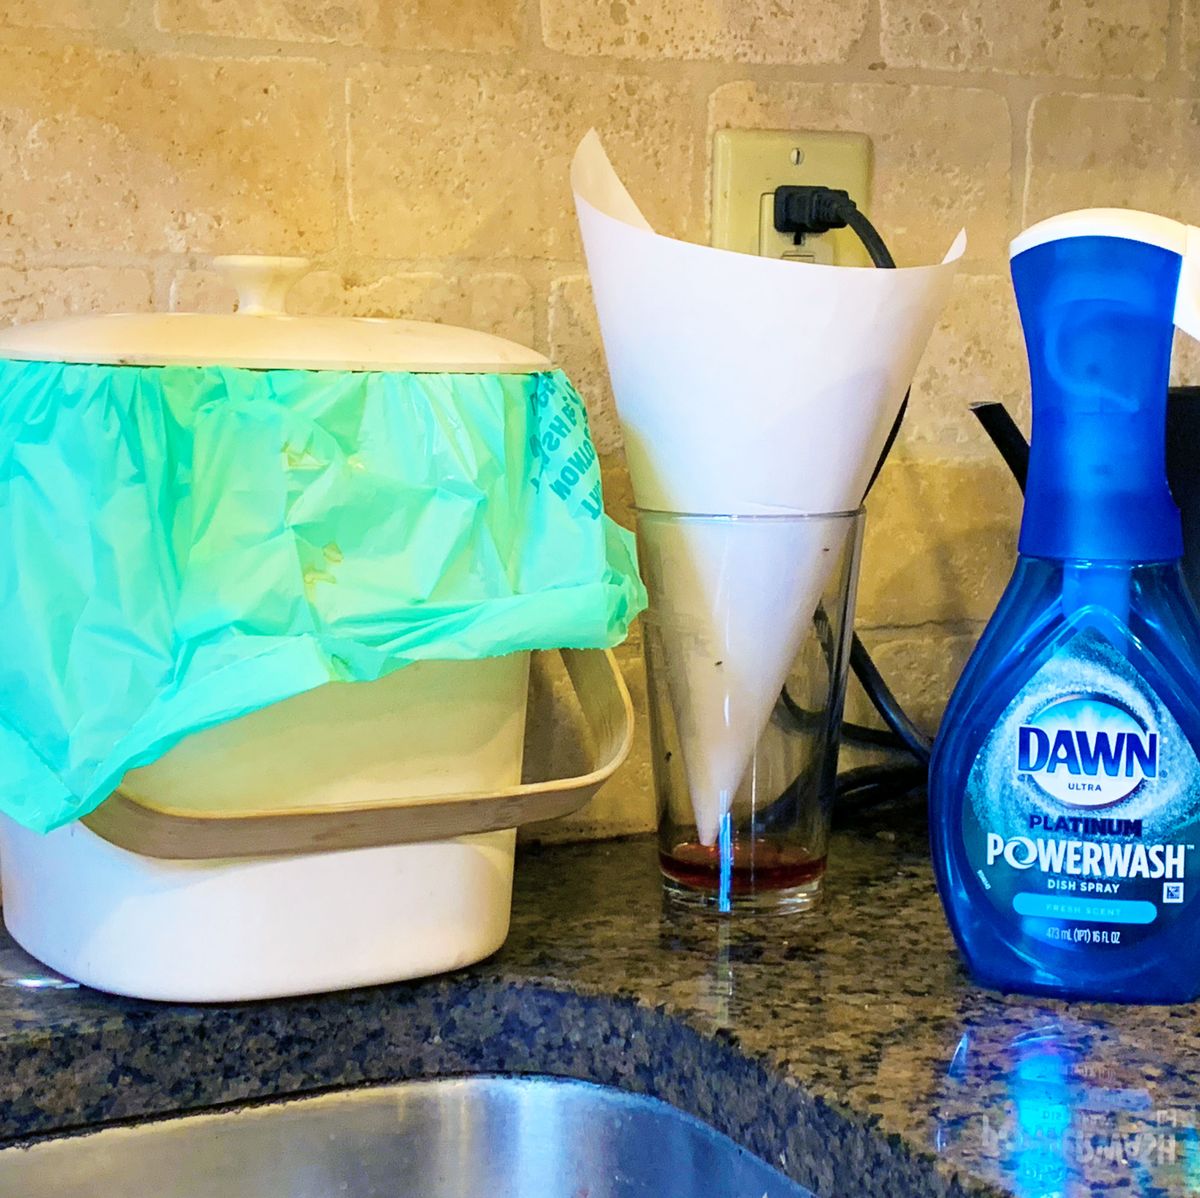 Dawn Spray Dish Soap, Fresh Scent, 16 fl oz 